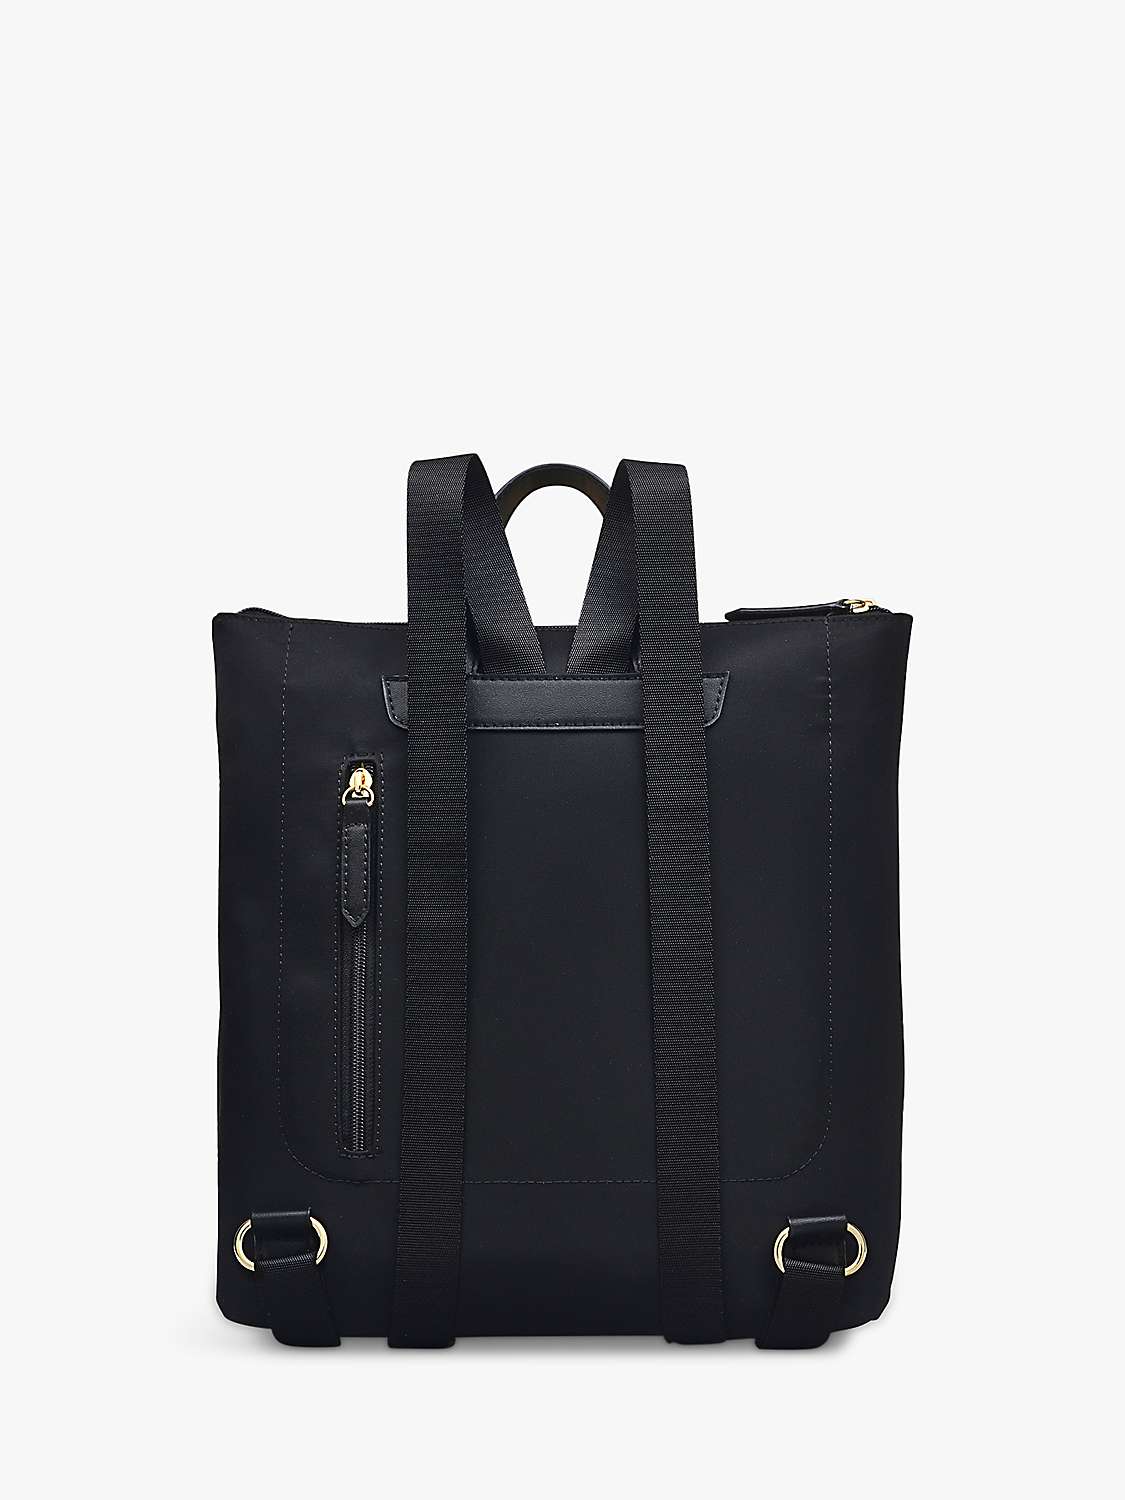 Buy Radley Pocket Essentials Responsible Large Backpack Online at johnlewis.com